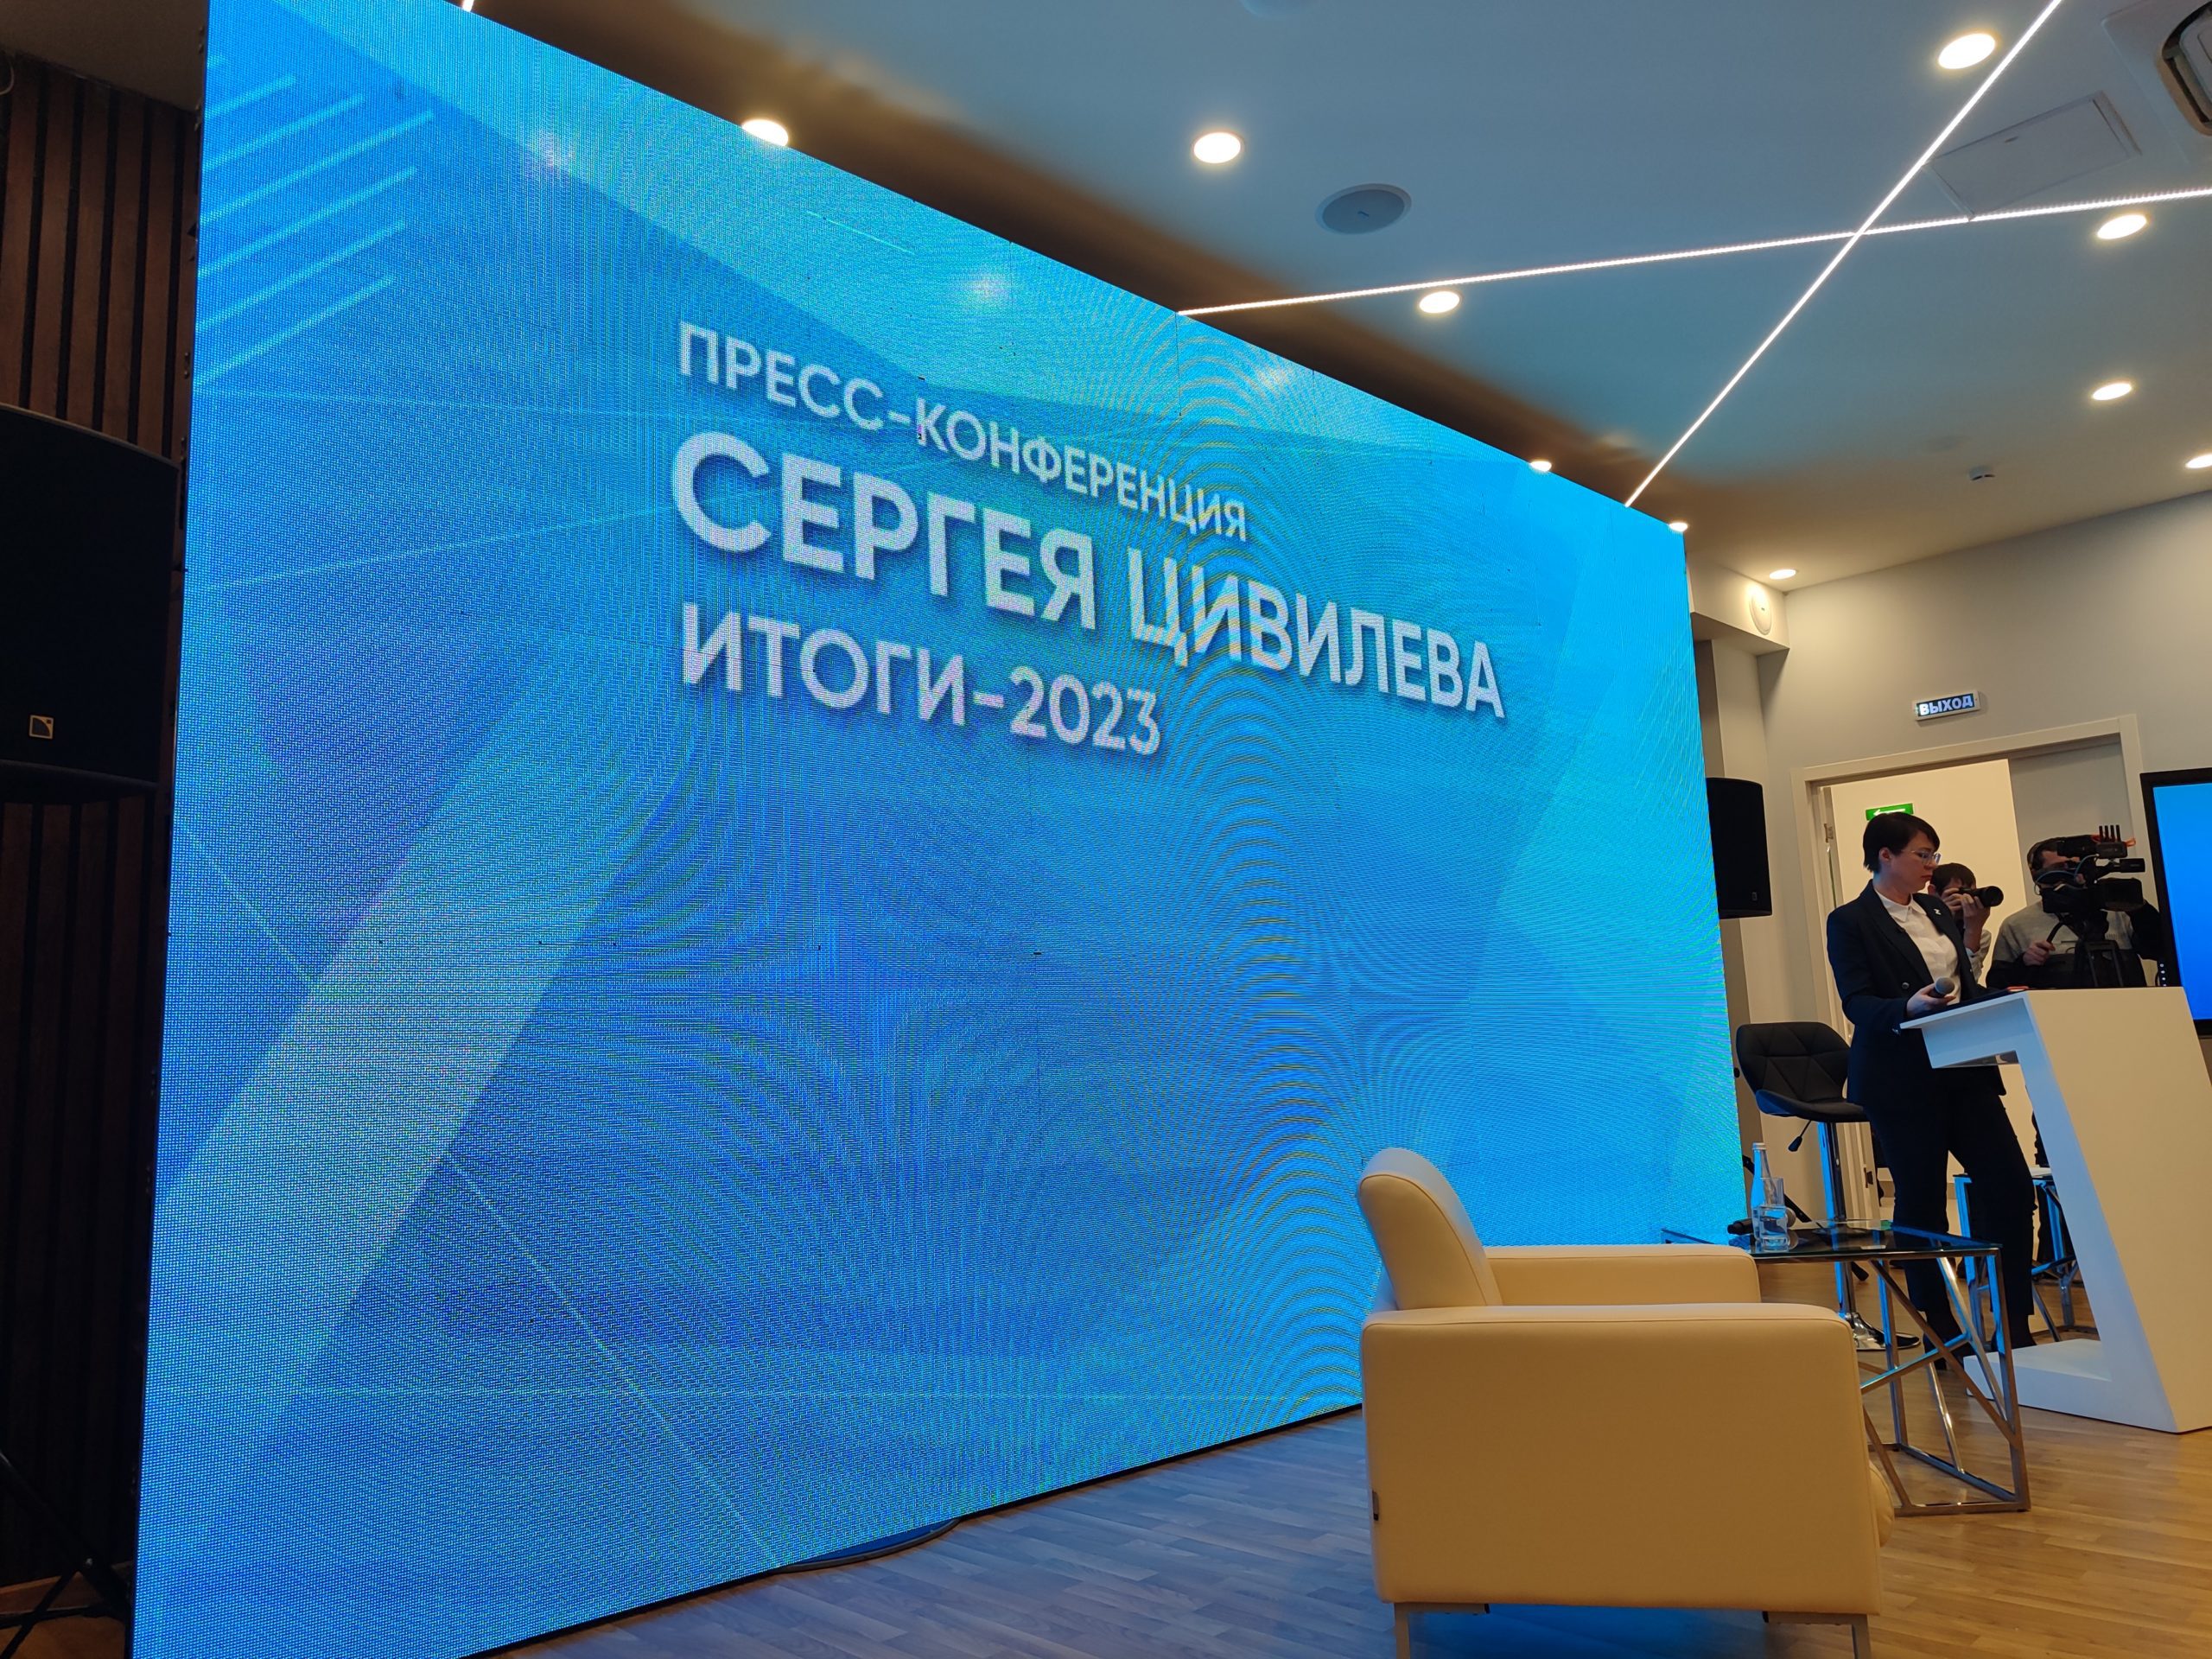 Пресс-конференция Сергея Цивилева: о транспортной реформе